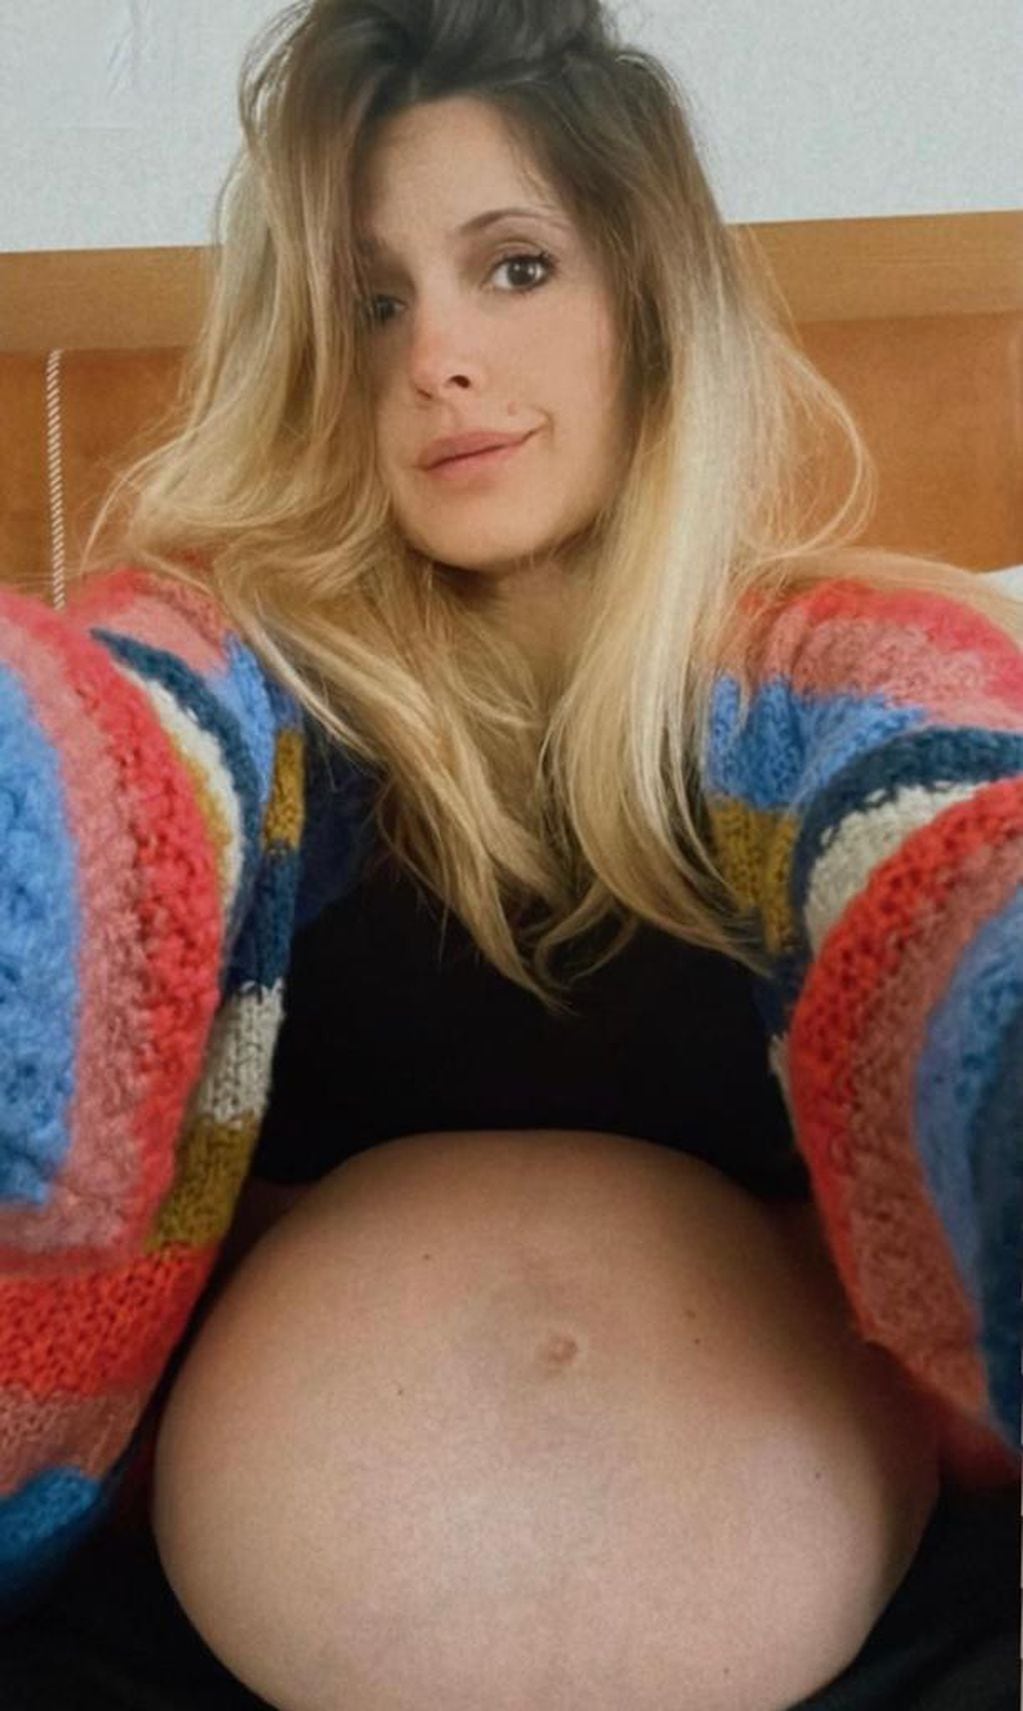 El tierno posteo de Macedo anunciado la semana 29 de embarazo y atravesando los últimos meses antes de la llegada de su bebé.